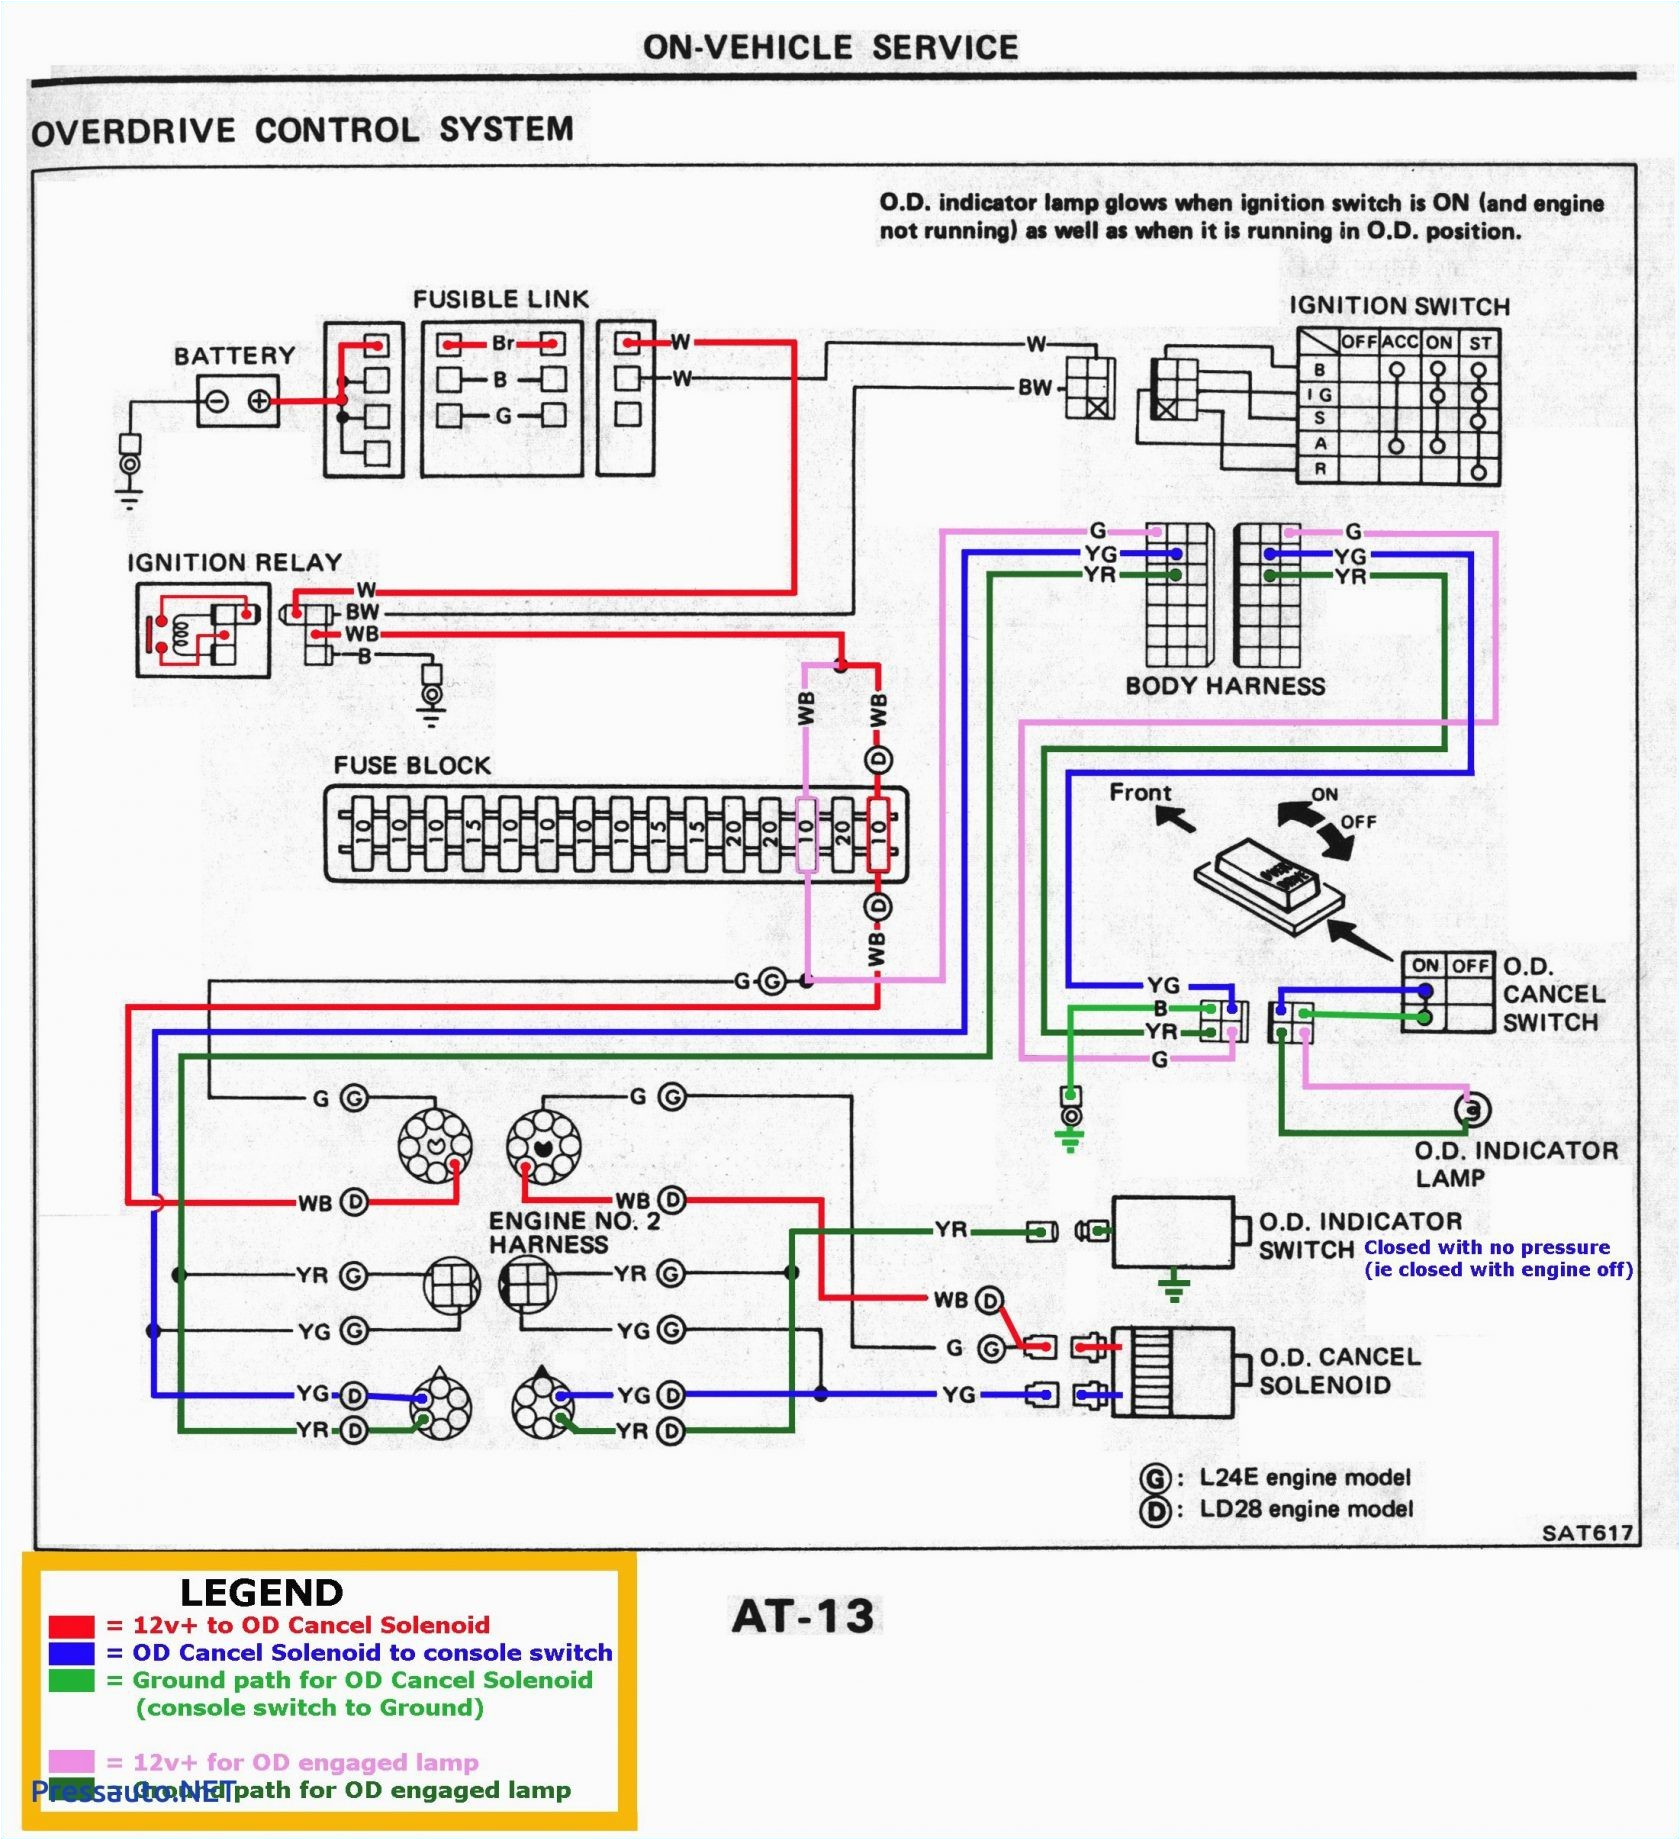 Power Window Wiring Diagram Chevy Bmw 328i Power Windows Wiring Diagram Wiring Diagram Show